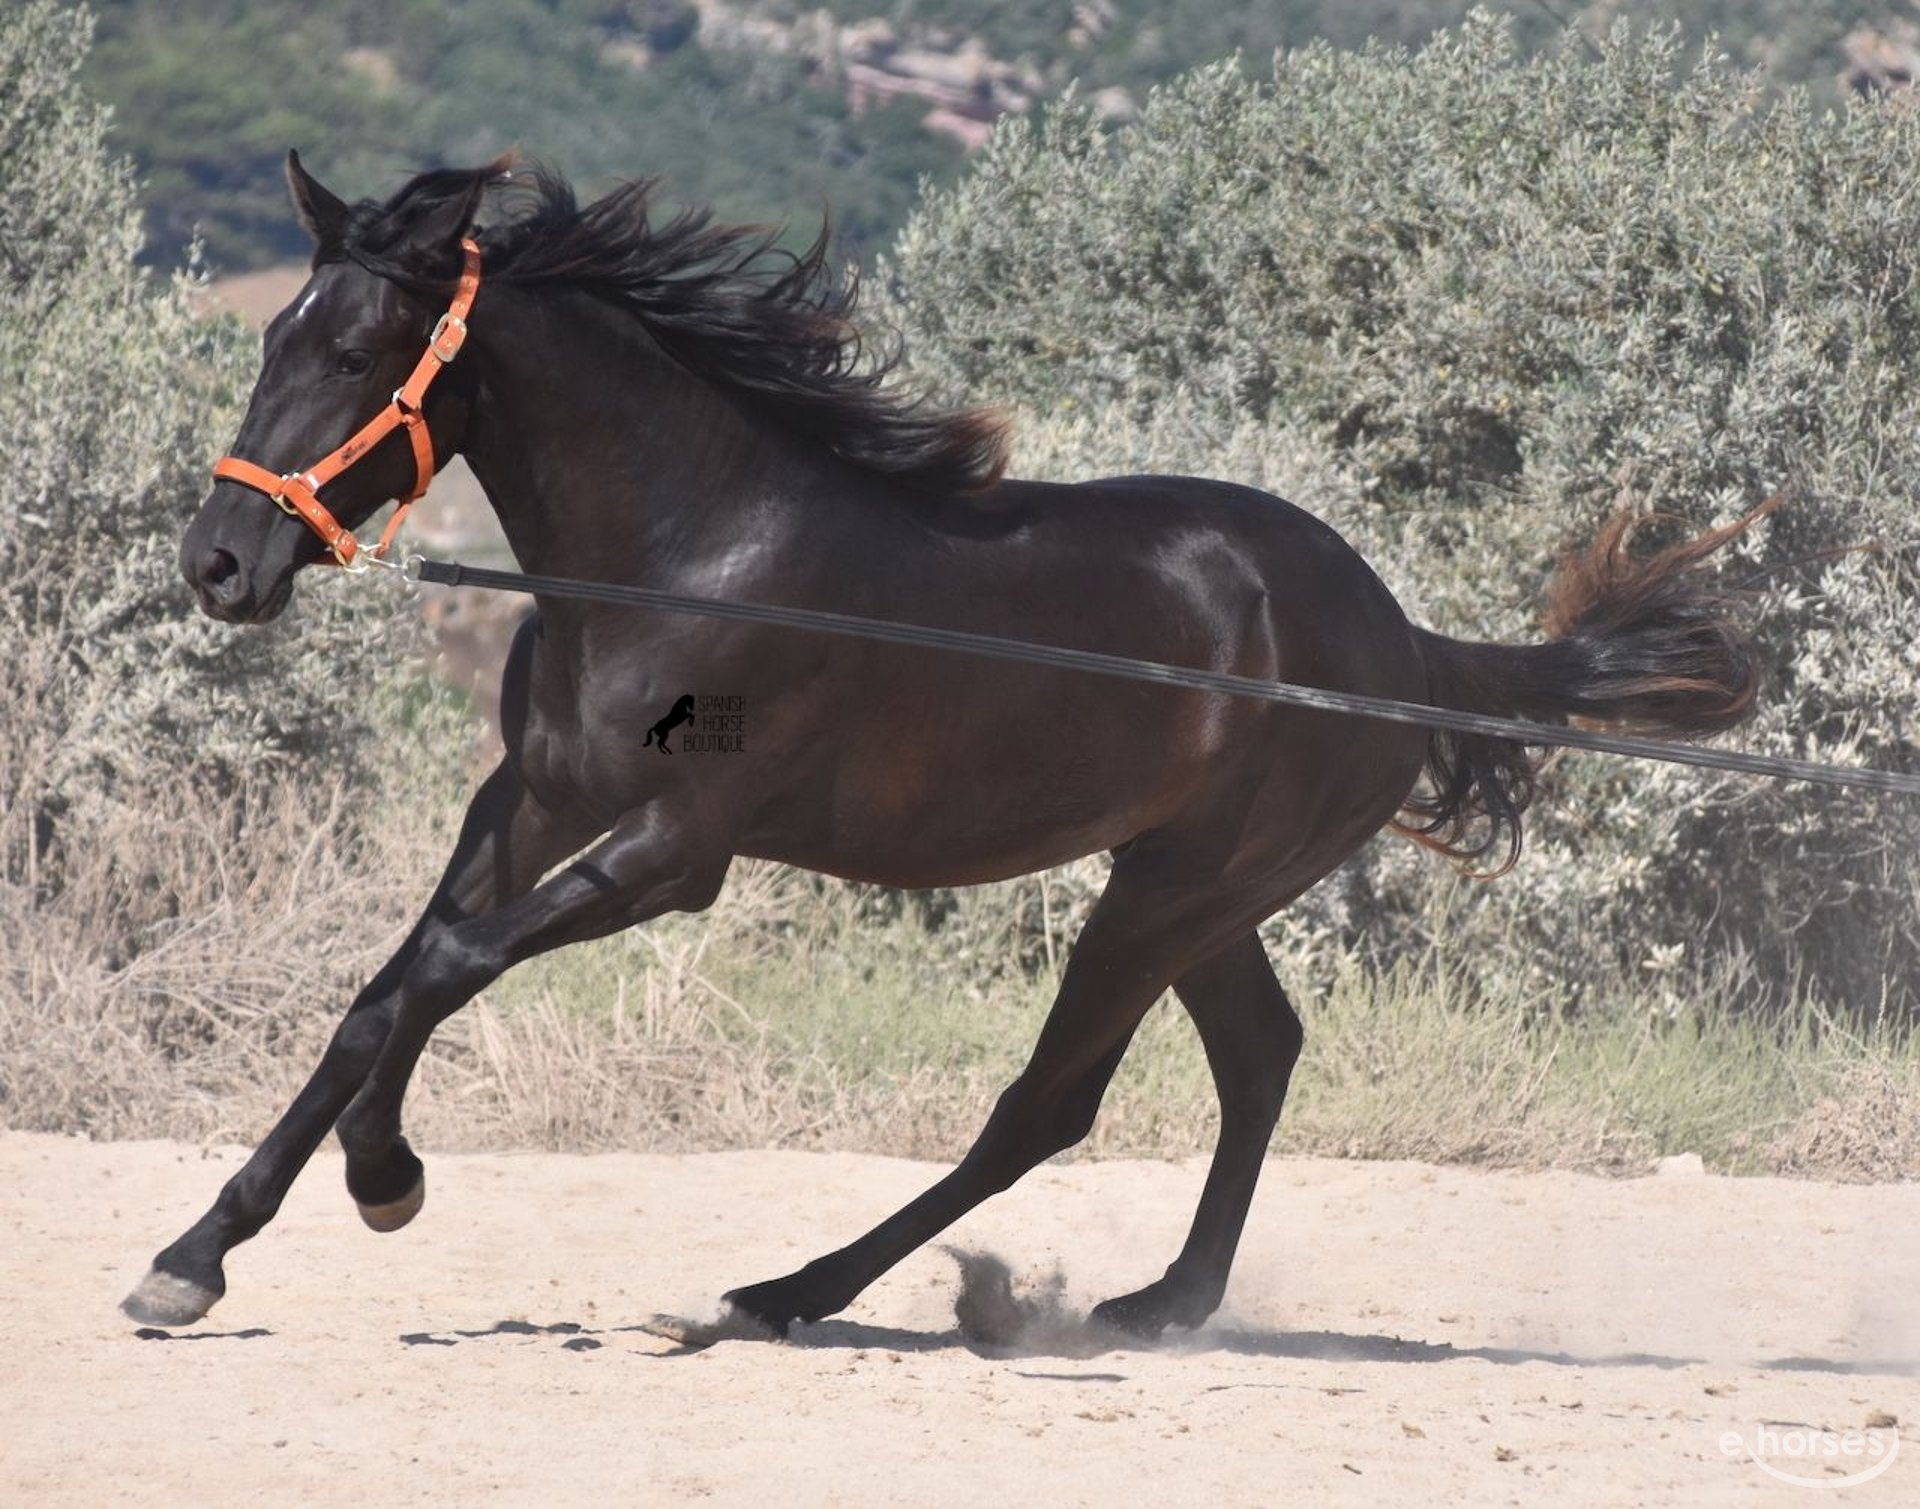 Le “Black horse” entre dans la course